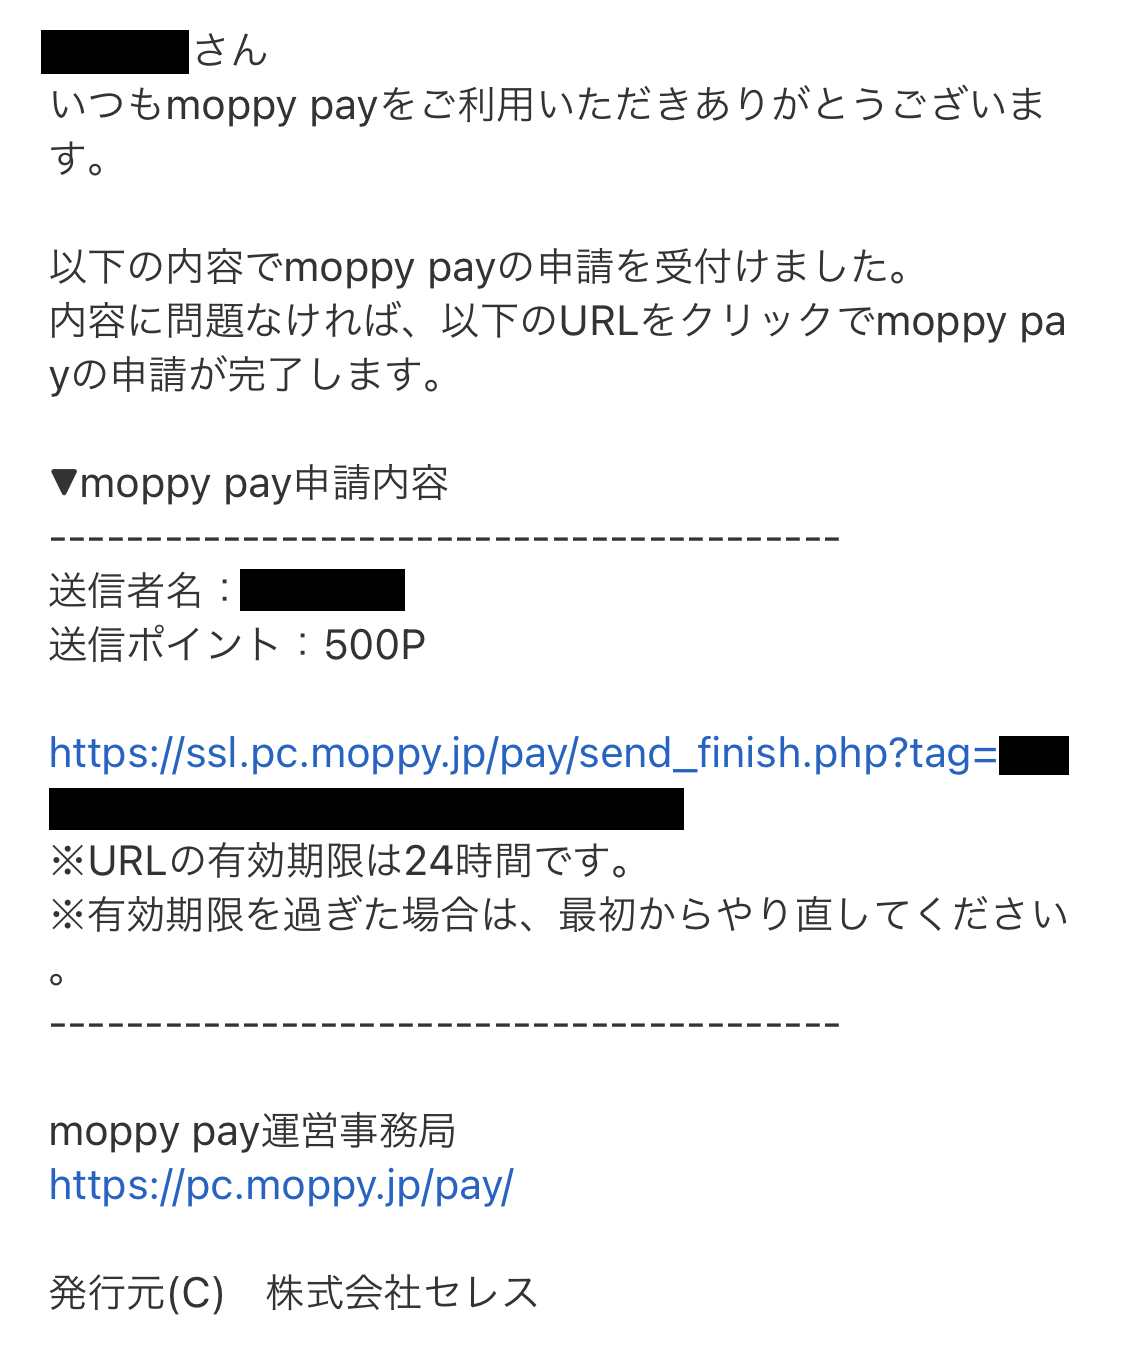 moppy payのリターンメール